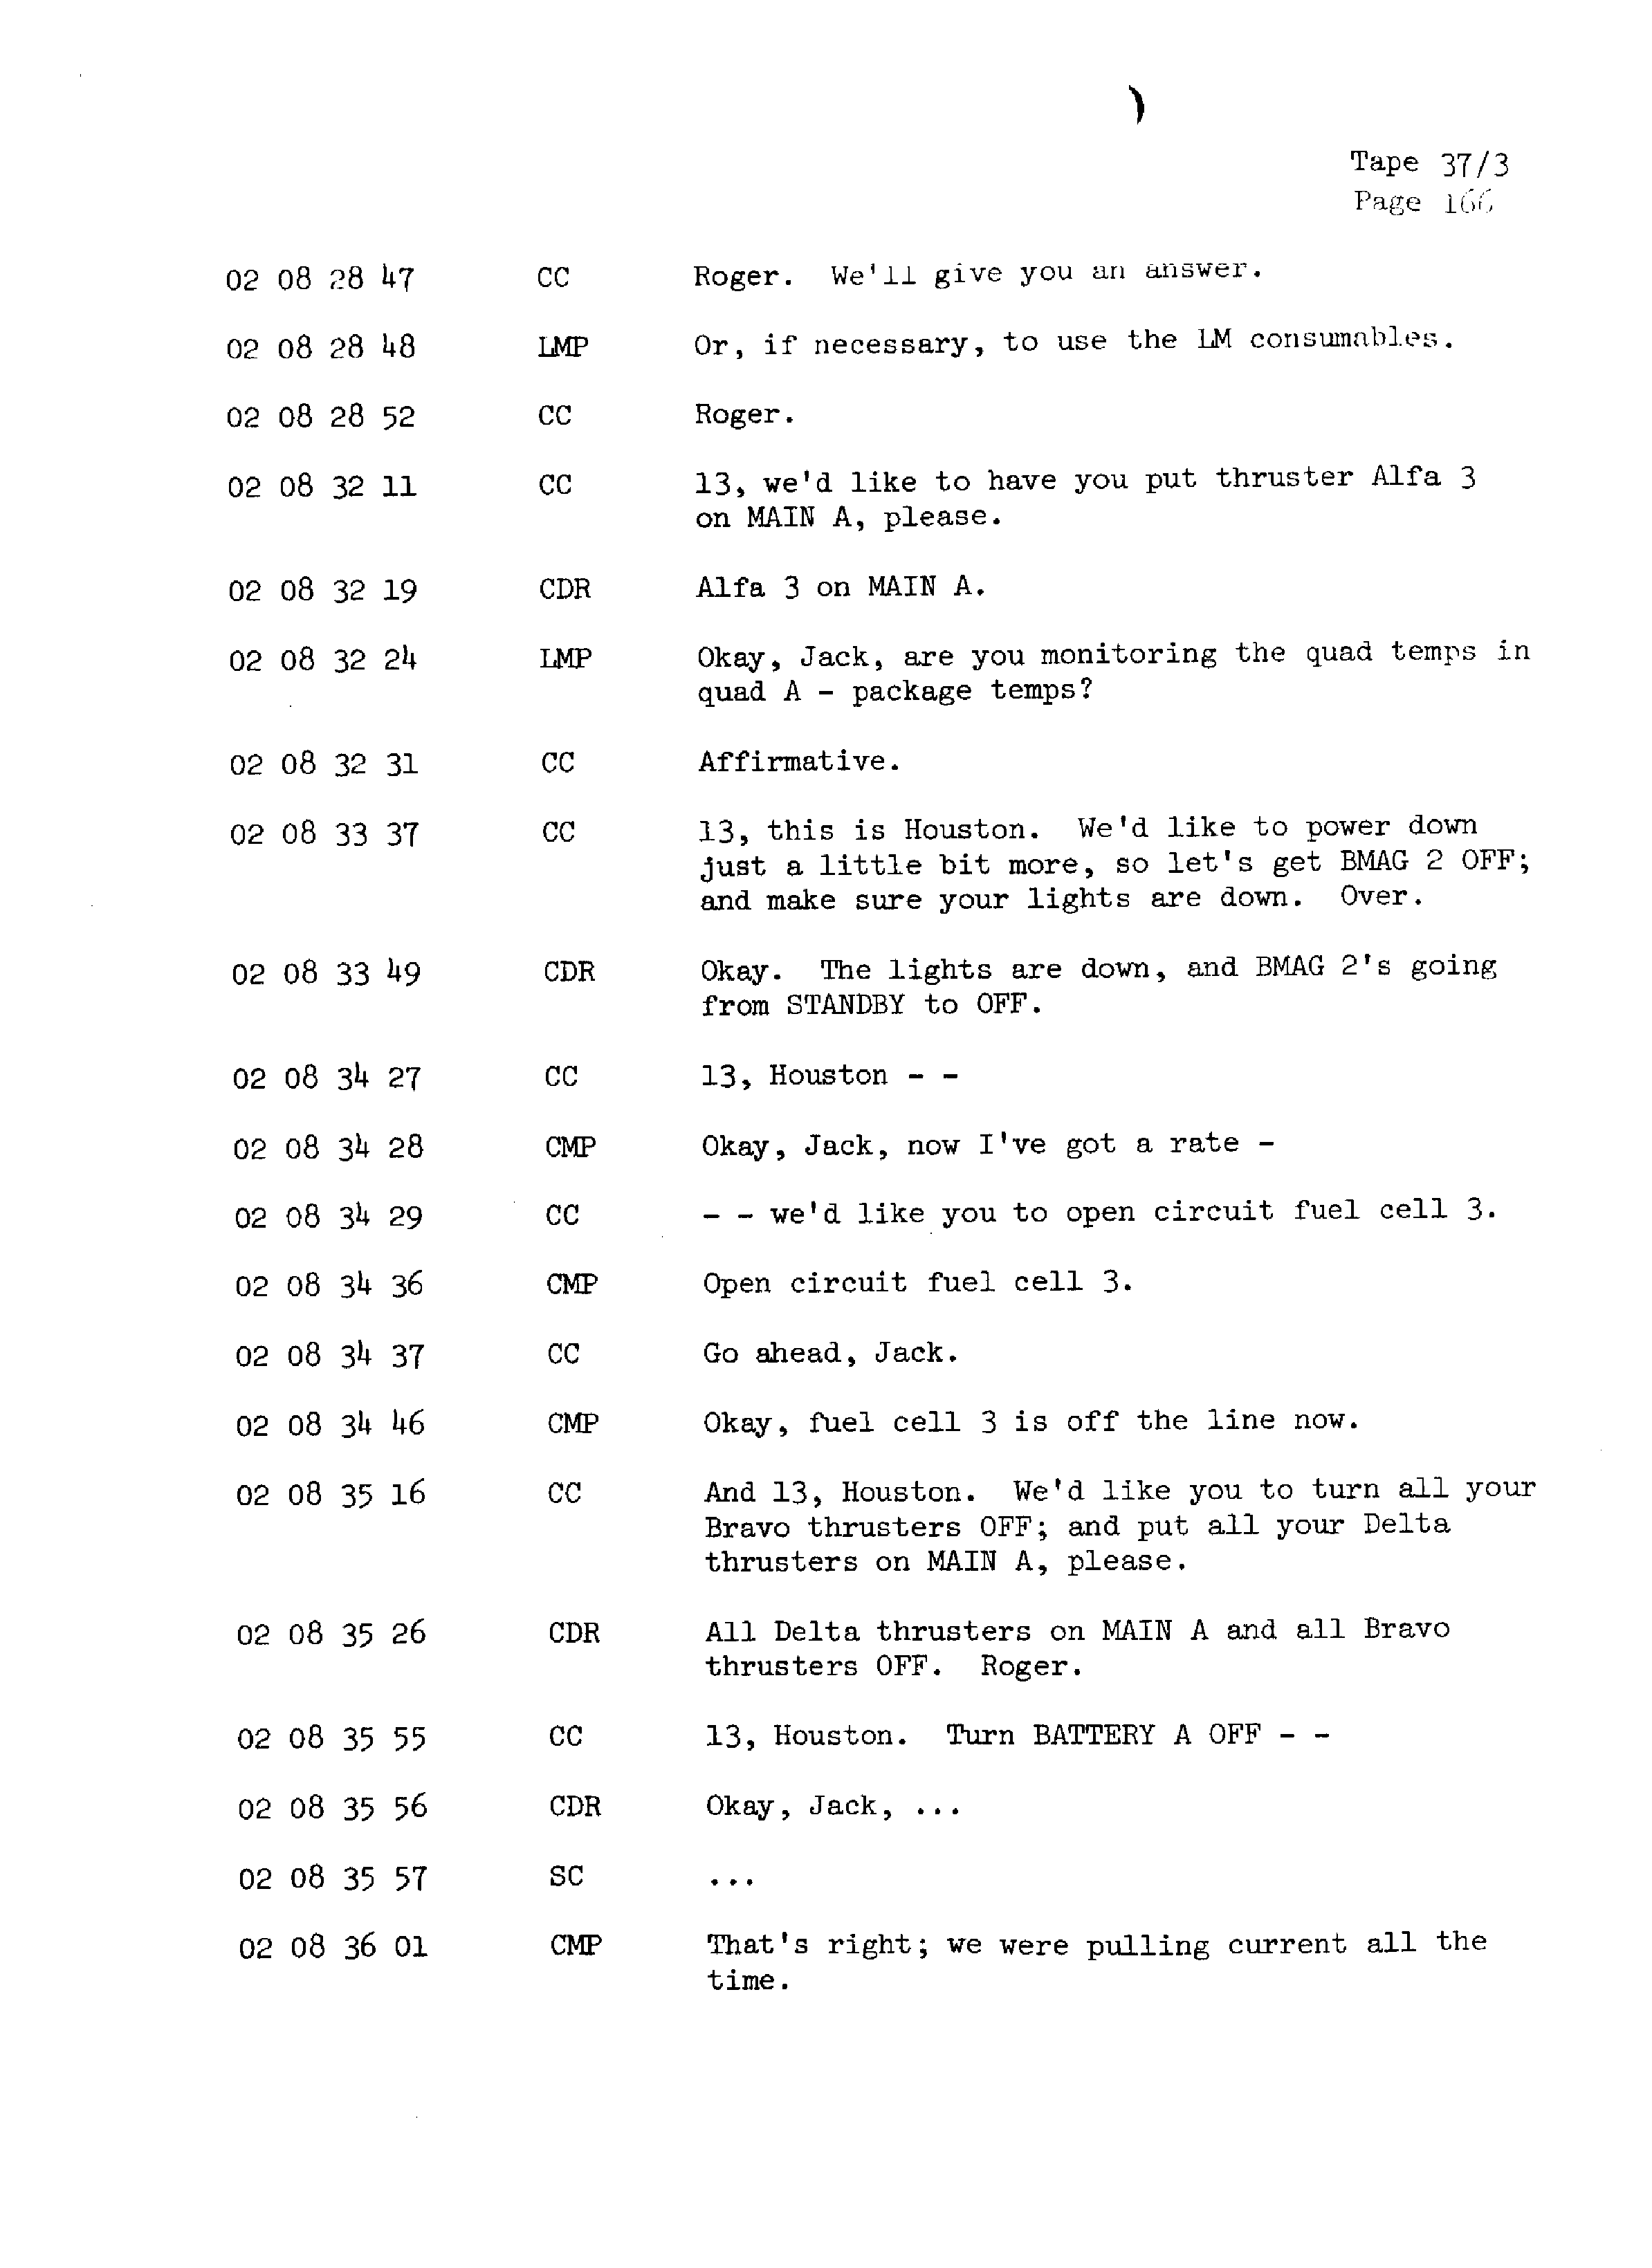 Page 173 of Apollo 13’s original transcript